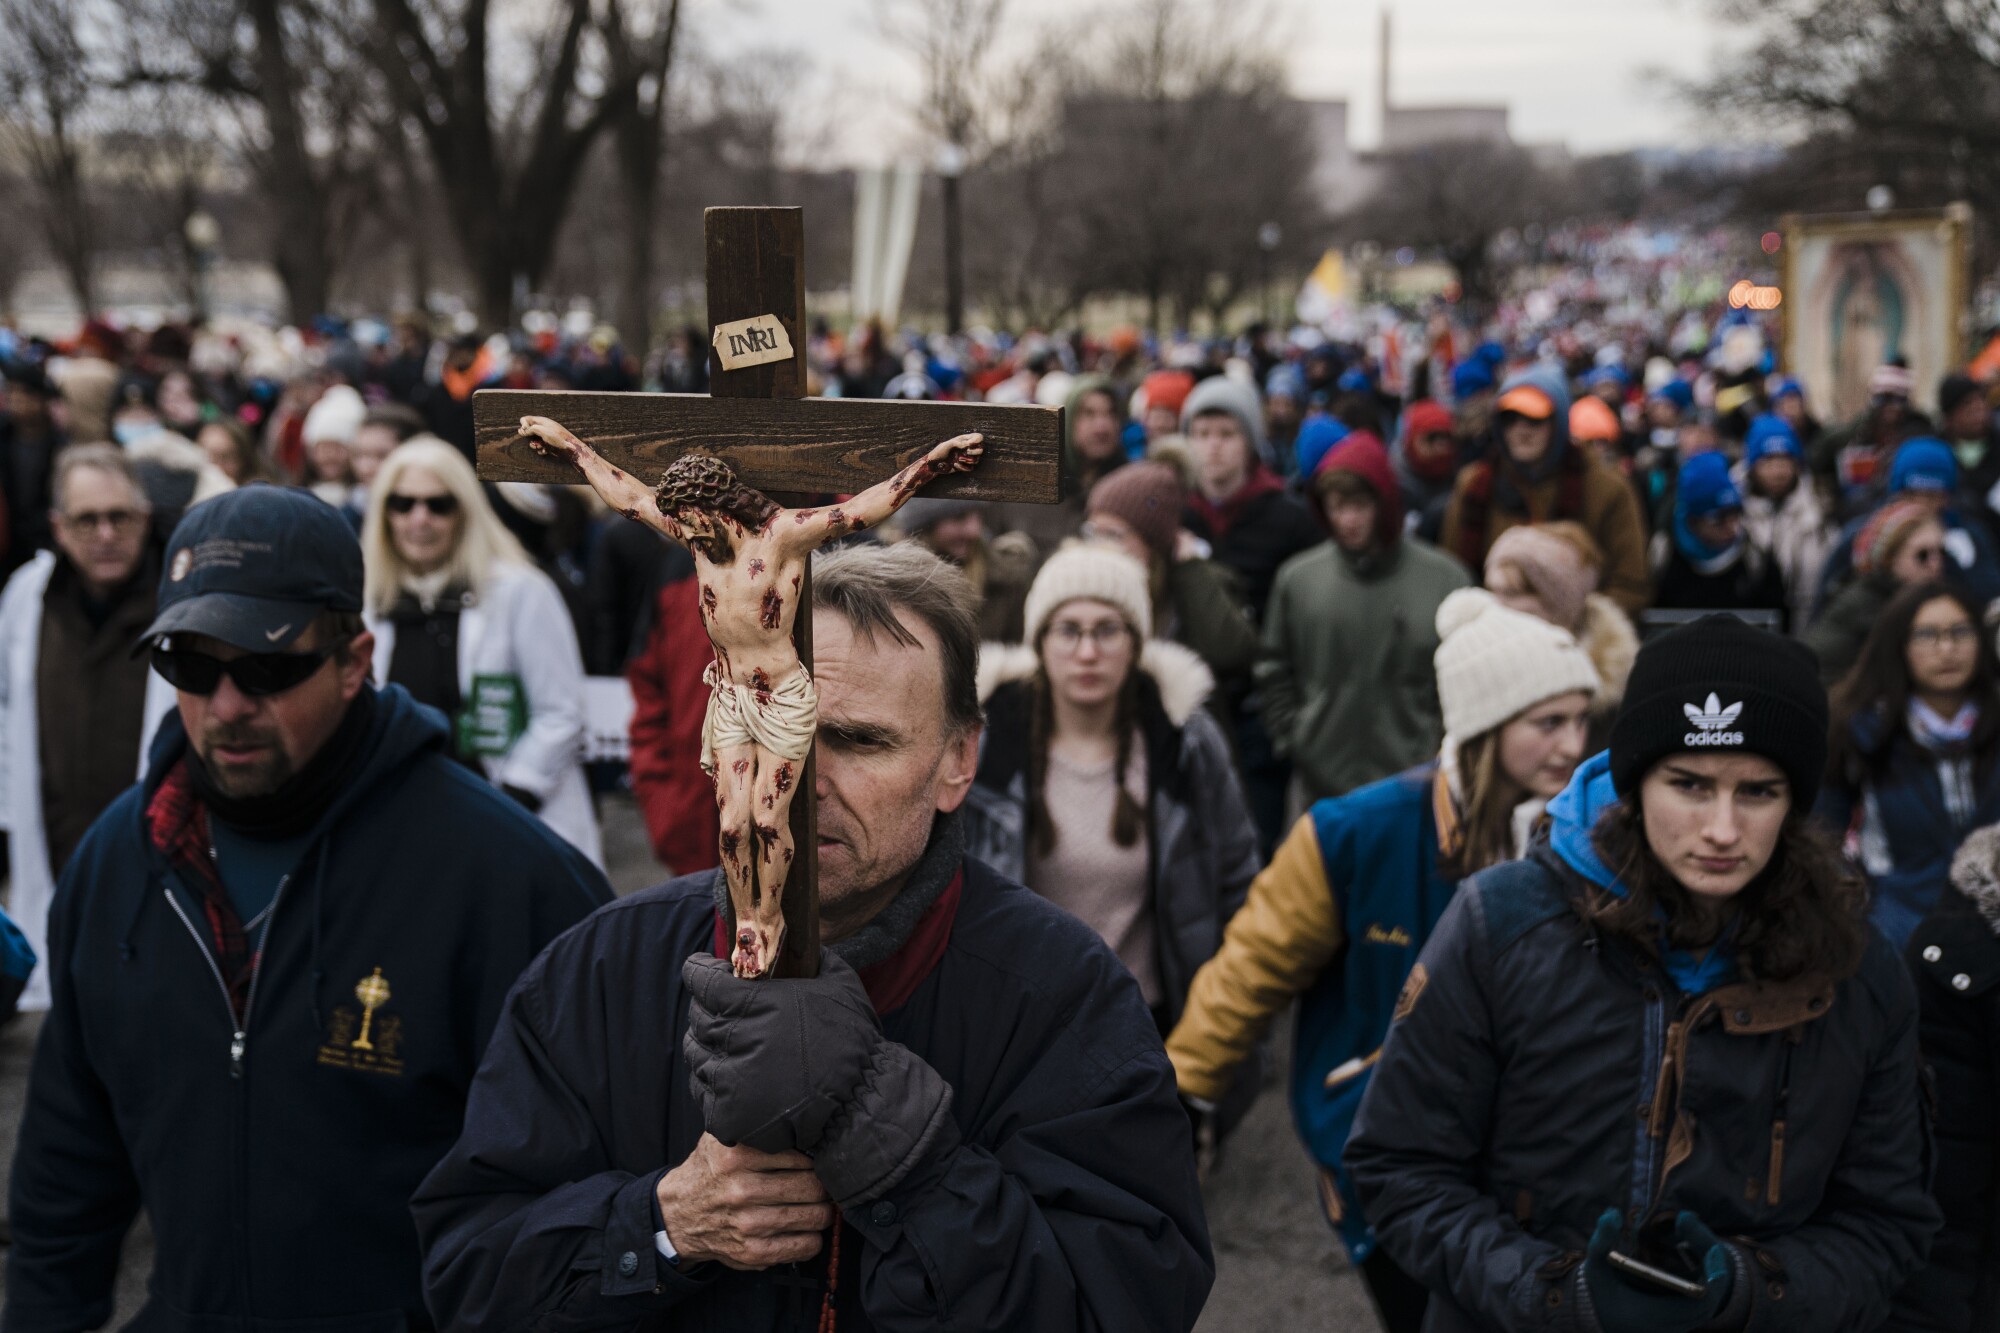 Baton Rouge, La.'dan Richard Mahoney, Ocak ayında Washington'da düzenlenen Yaşam İçin Yürüyüş protestosu sırasında bir haç tutuyor. 